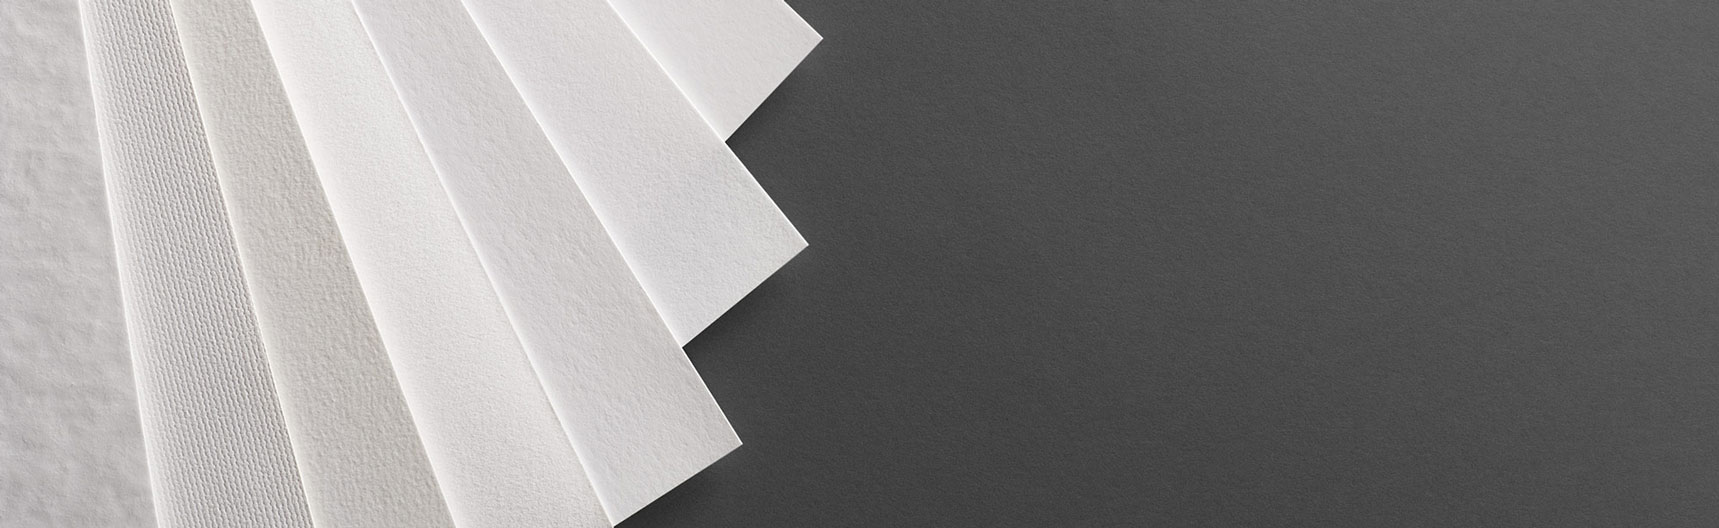 Nuancier de papiers photo Fine Art blancs disposés en éventail et destinés à l'impression de tirages d'art Fine Art